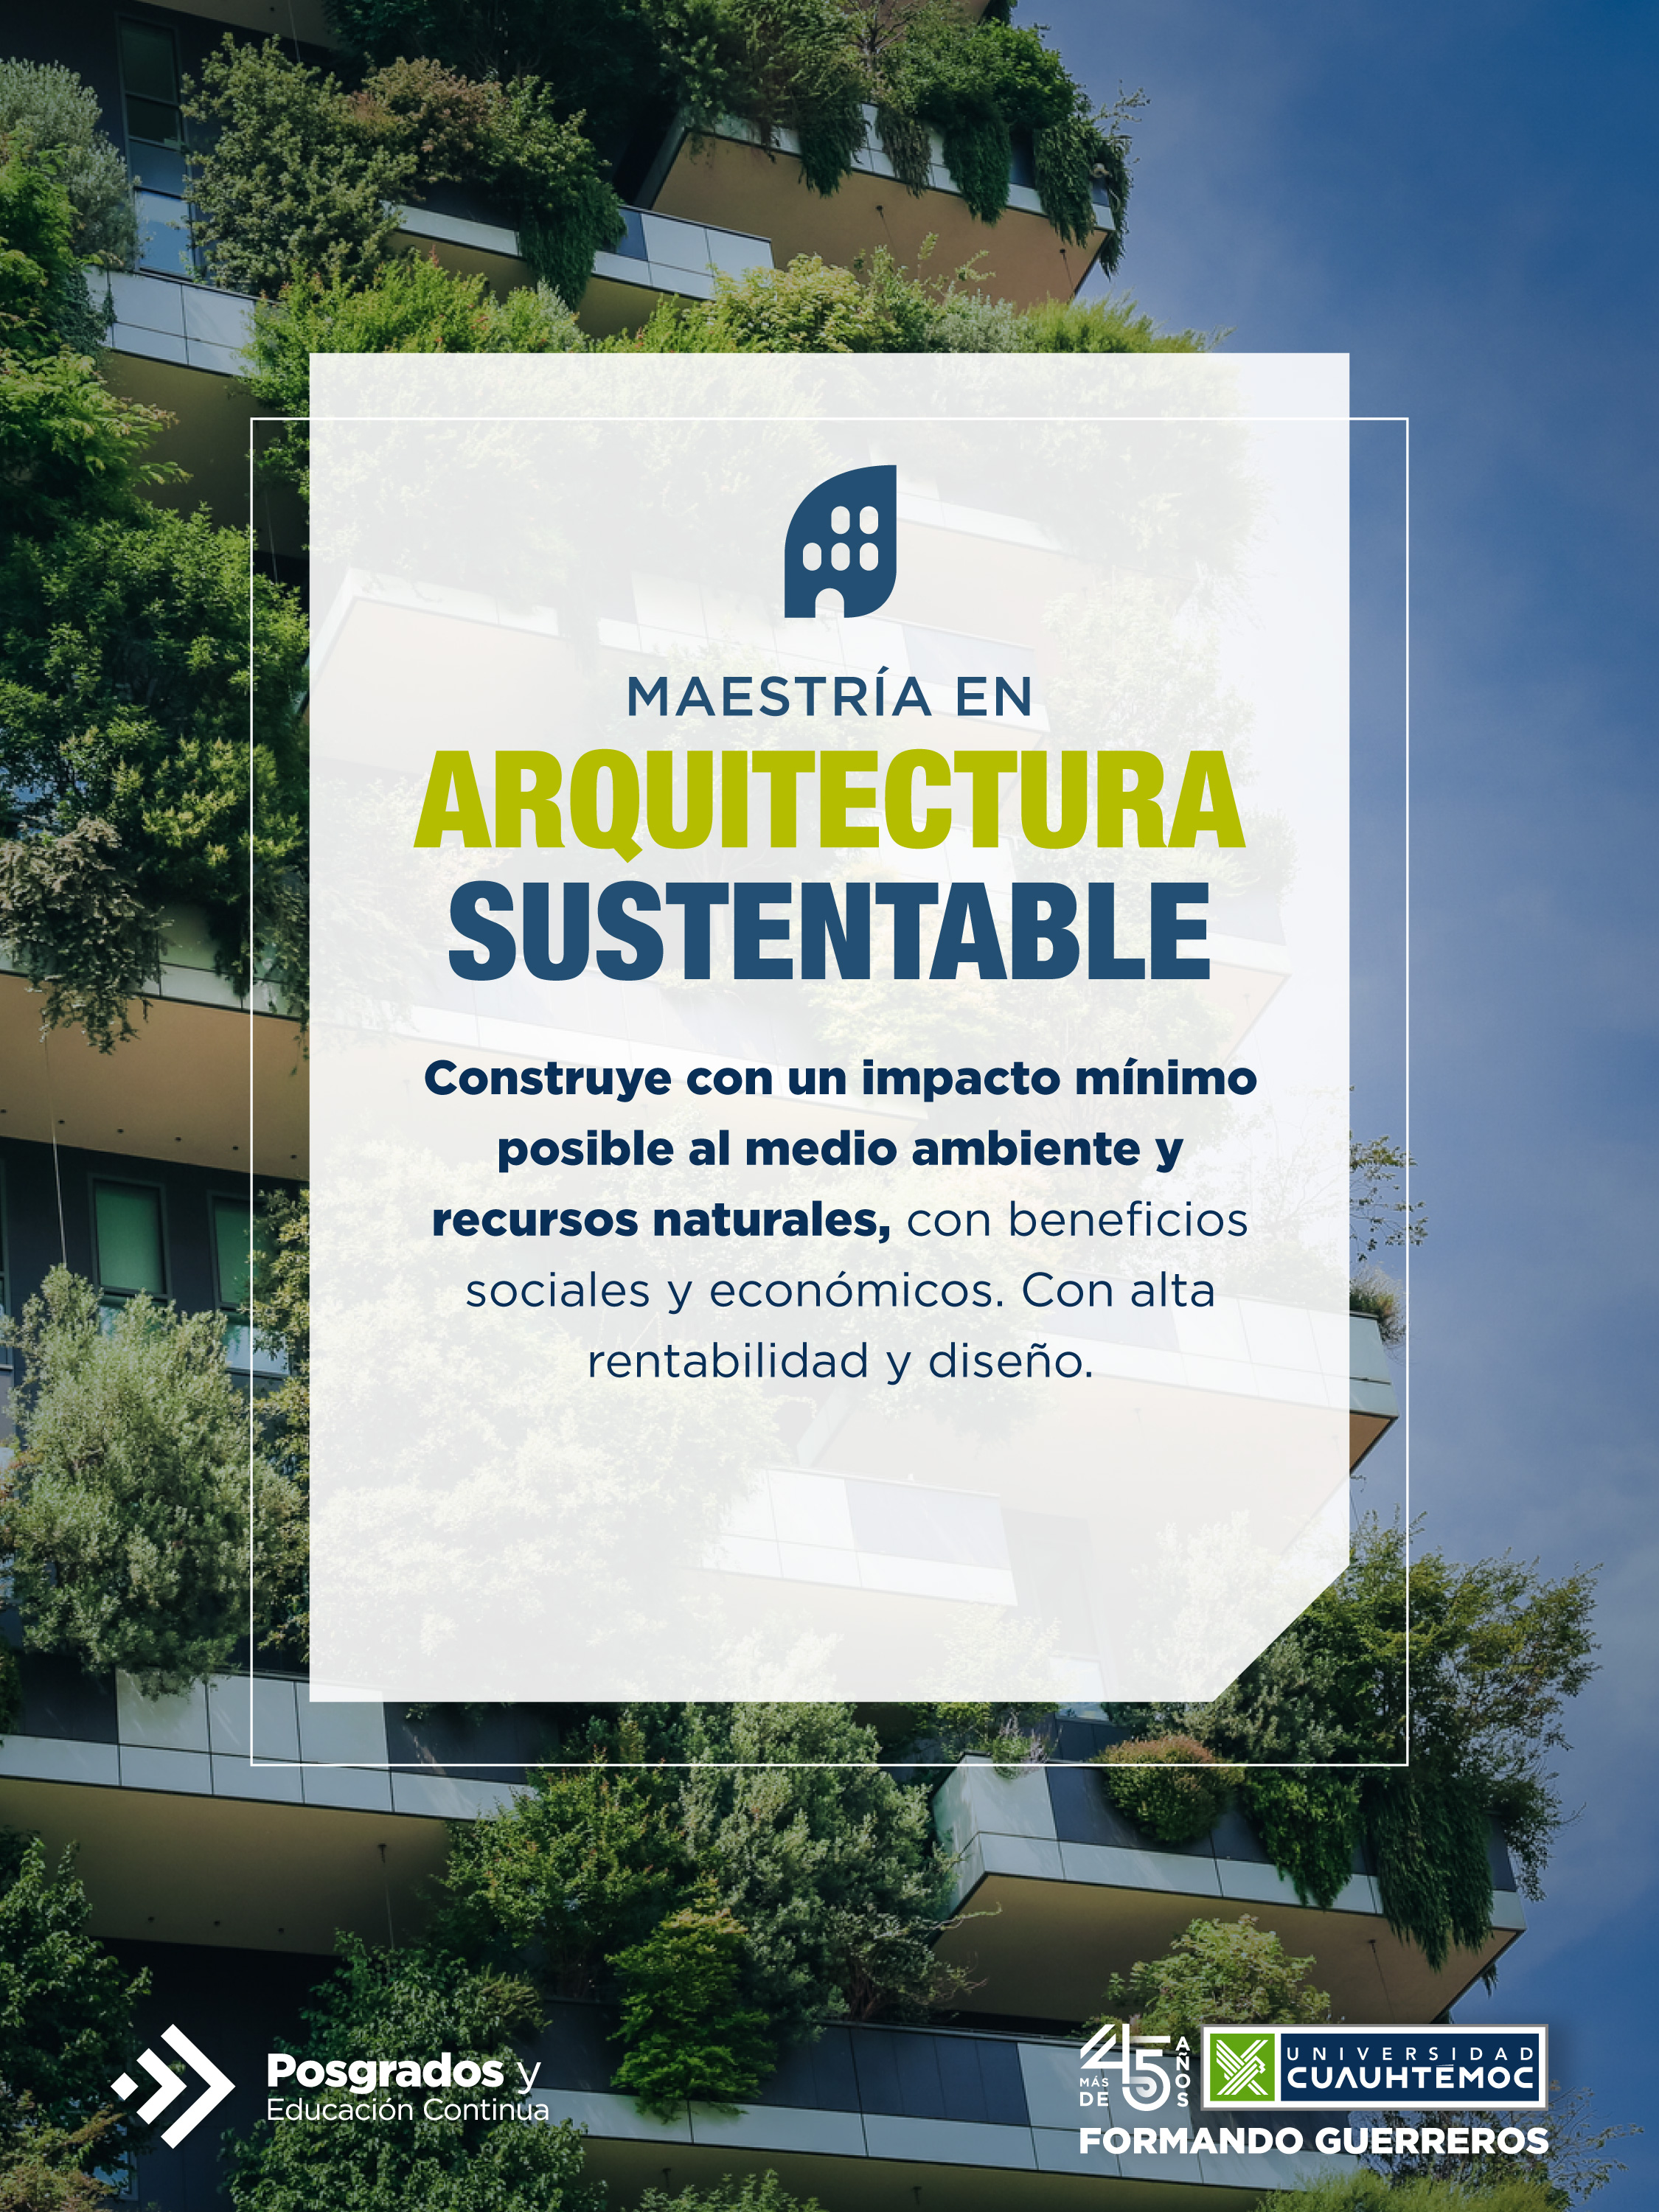 El objetivo de la Maestria en Arquitectura Sustentable de la Universidad Cuauhtémoc te animará a querer ser parte de este programa.